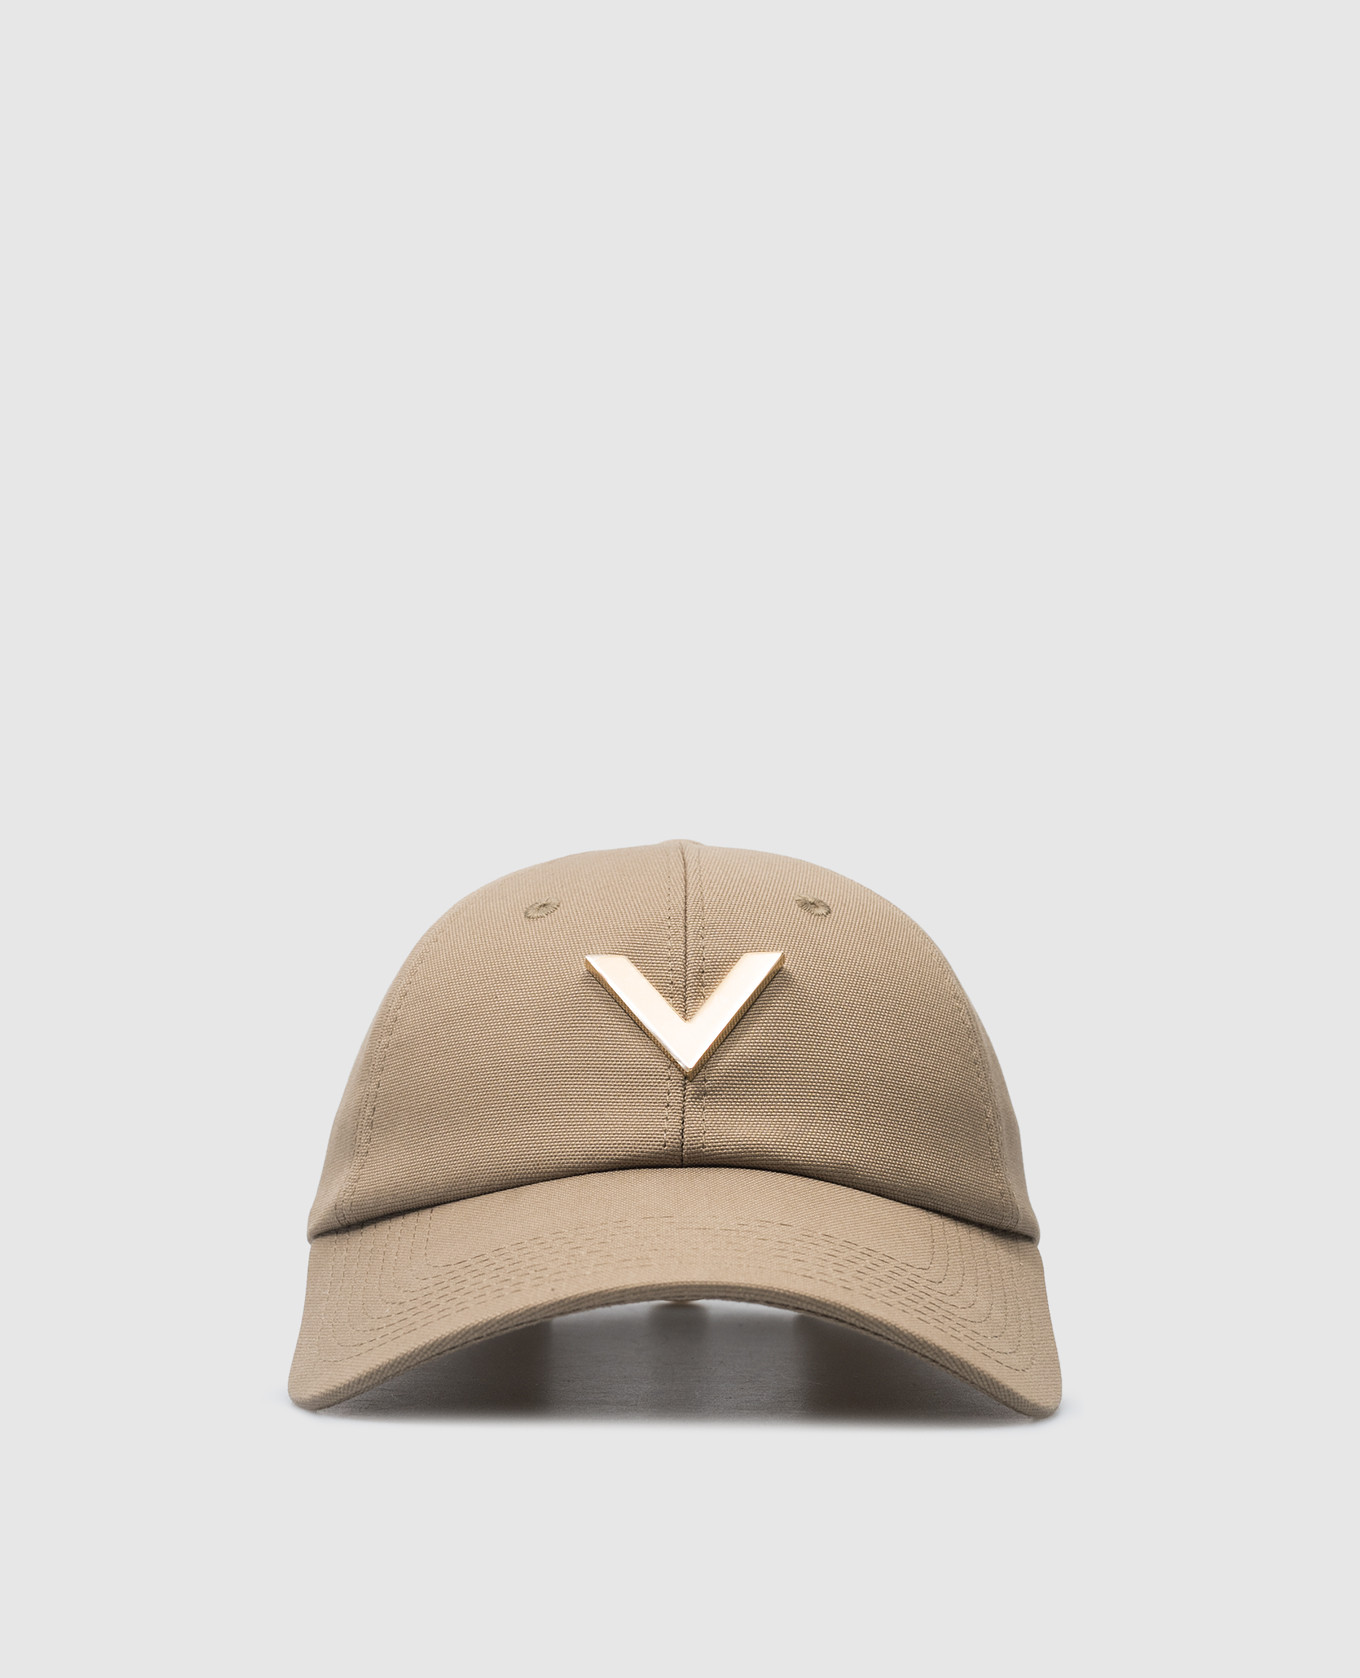 Khaki cap with metallic V logo